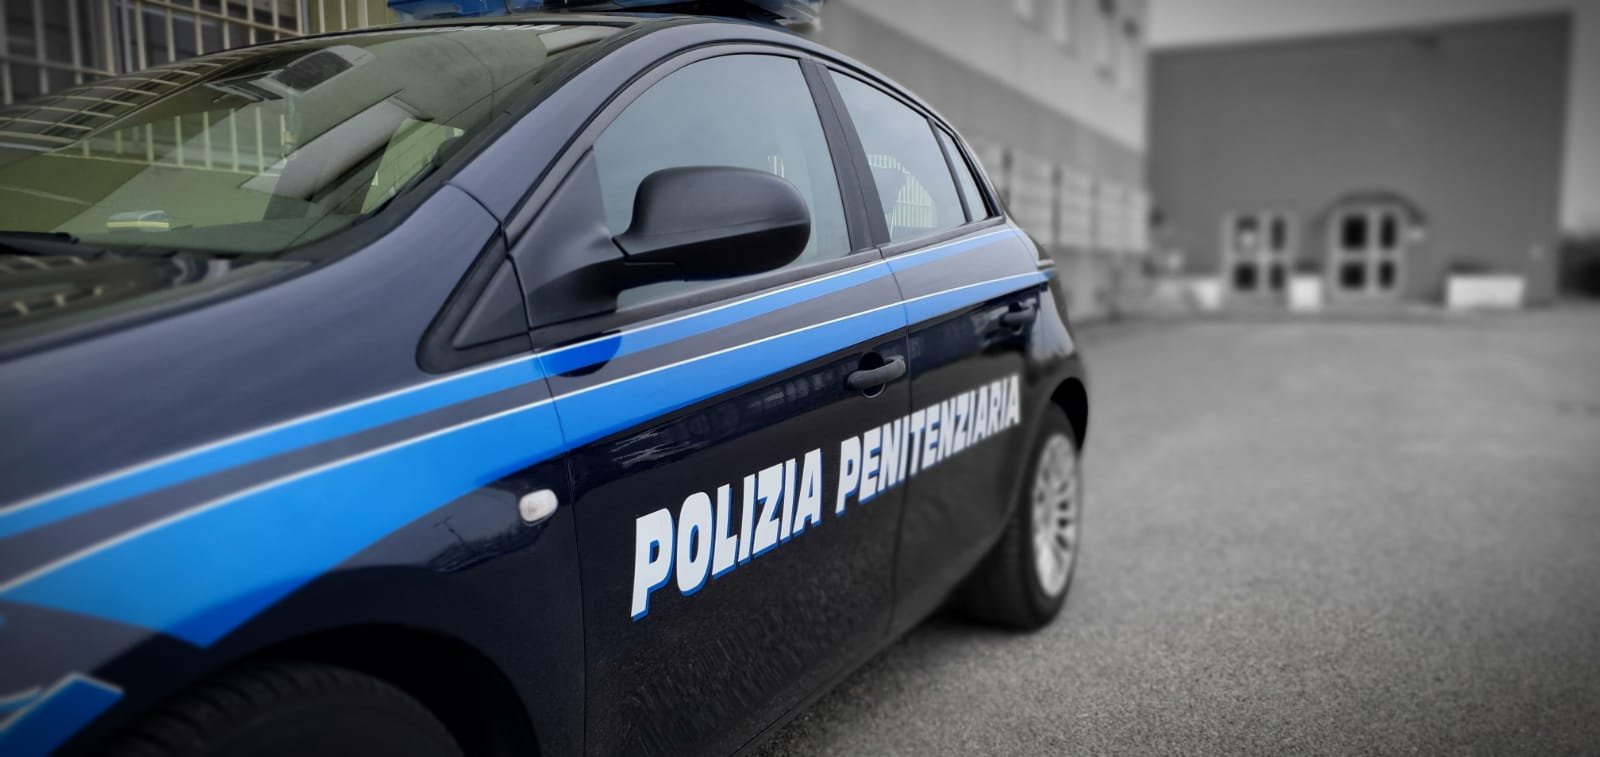 Polizia Penitenziaria, a Roma l’Osservatorio sui suicidi in divisa: in Italia 168 in 25 anni, 1 ad Alessandria